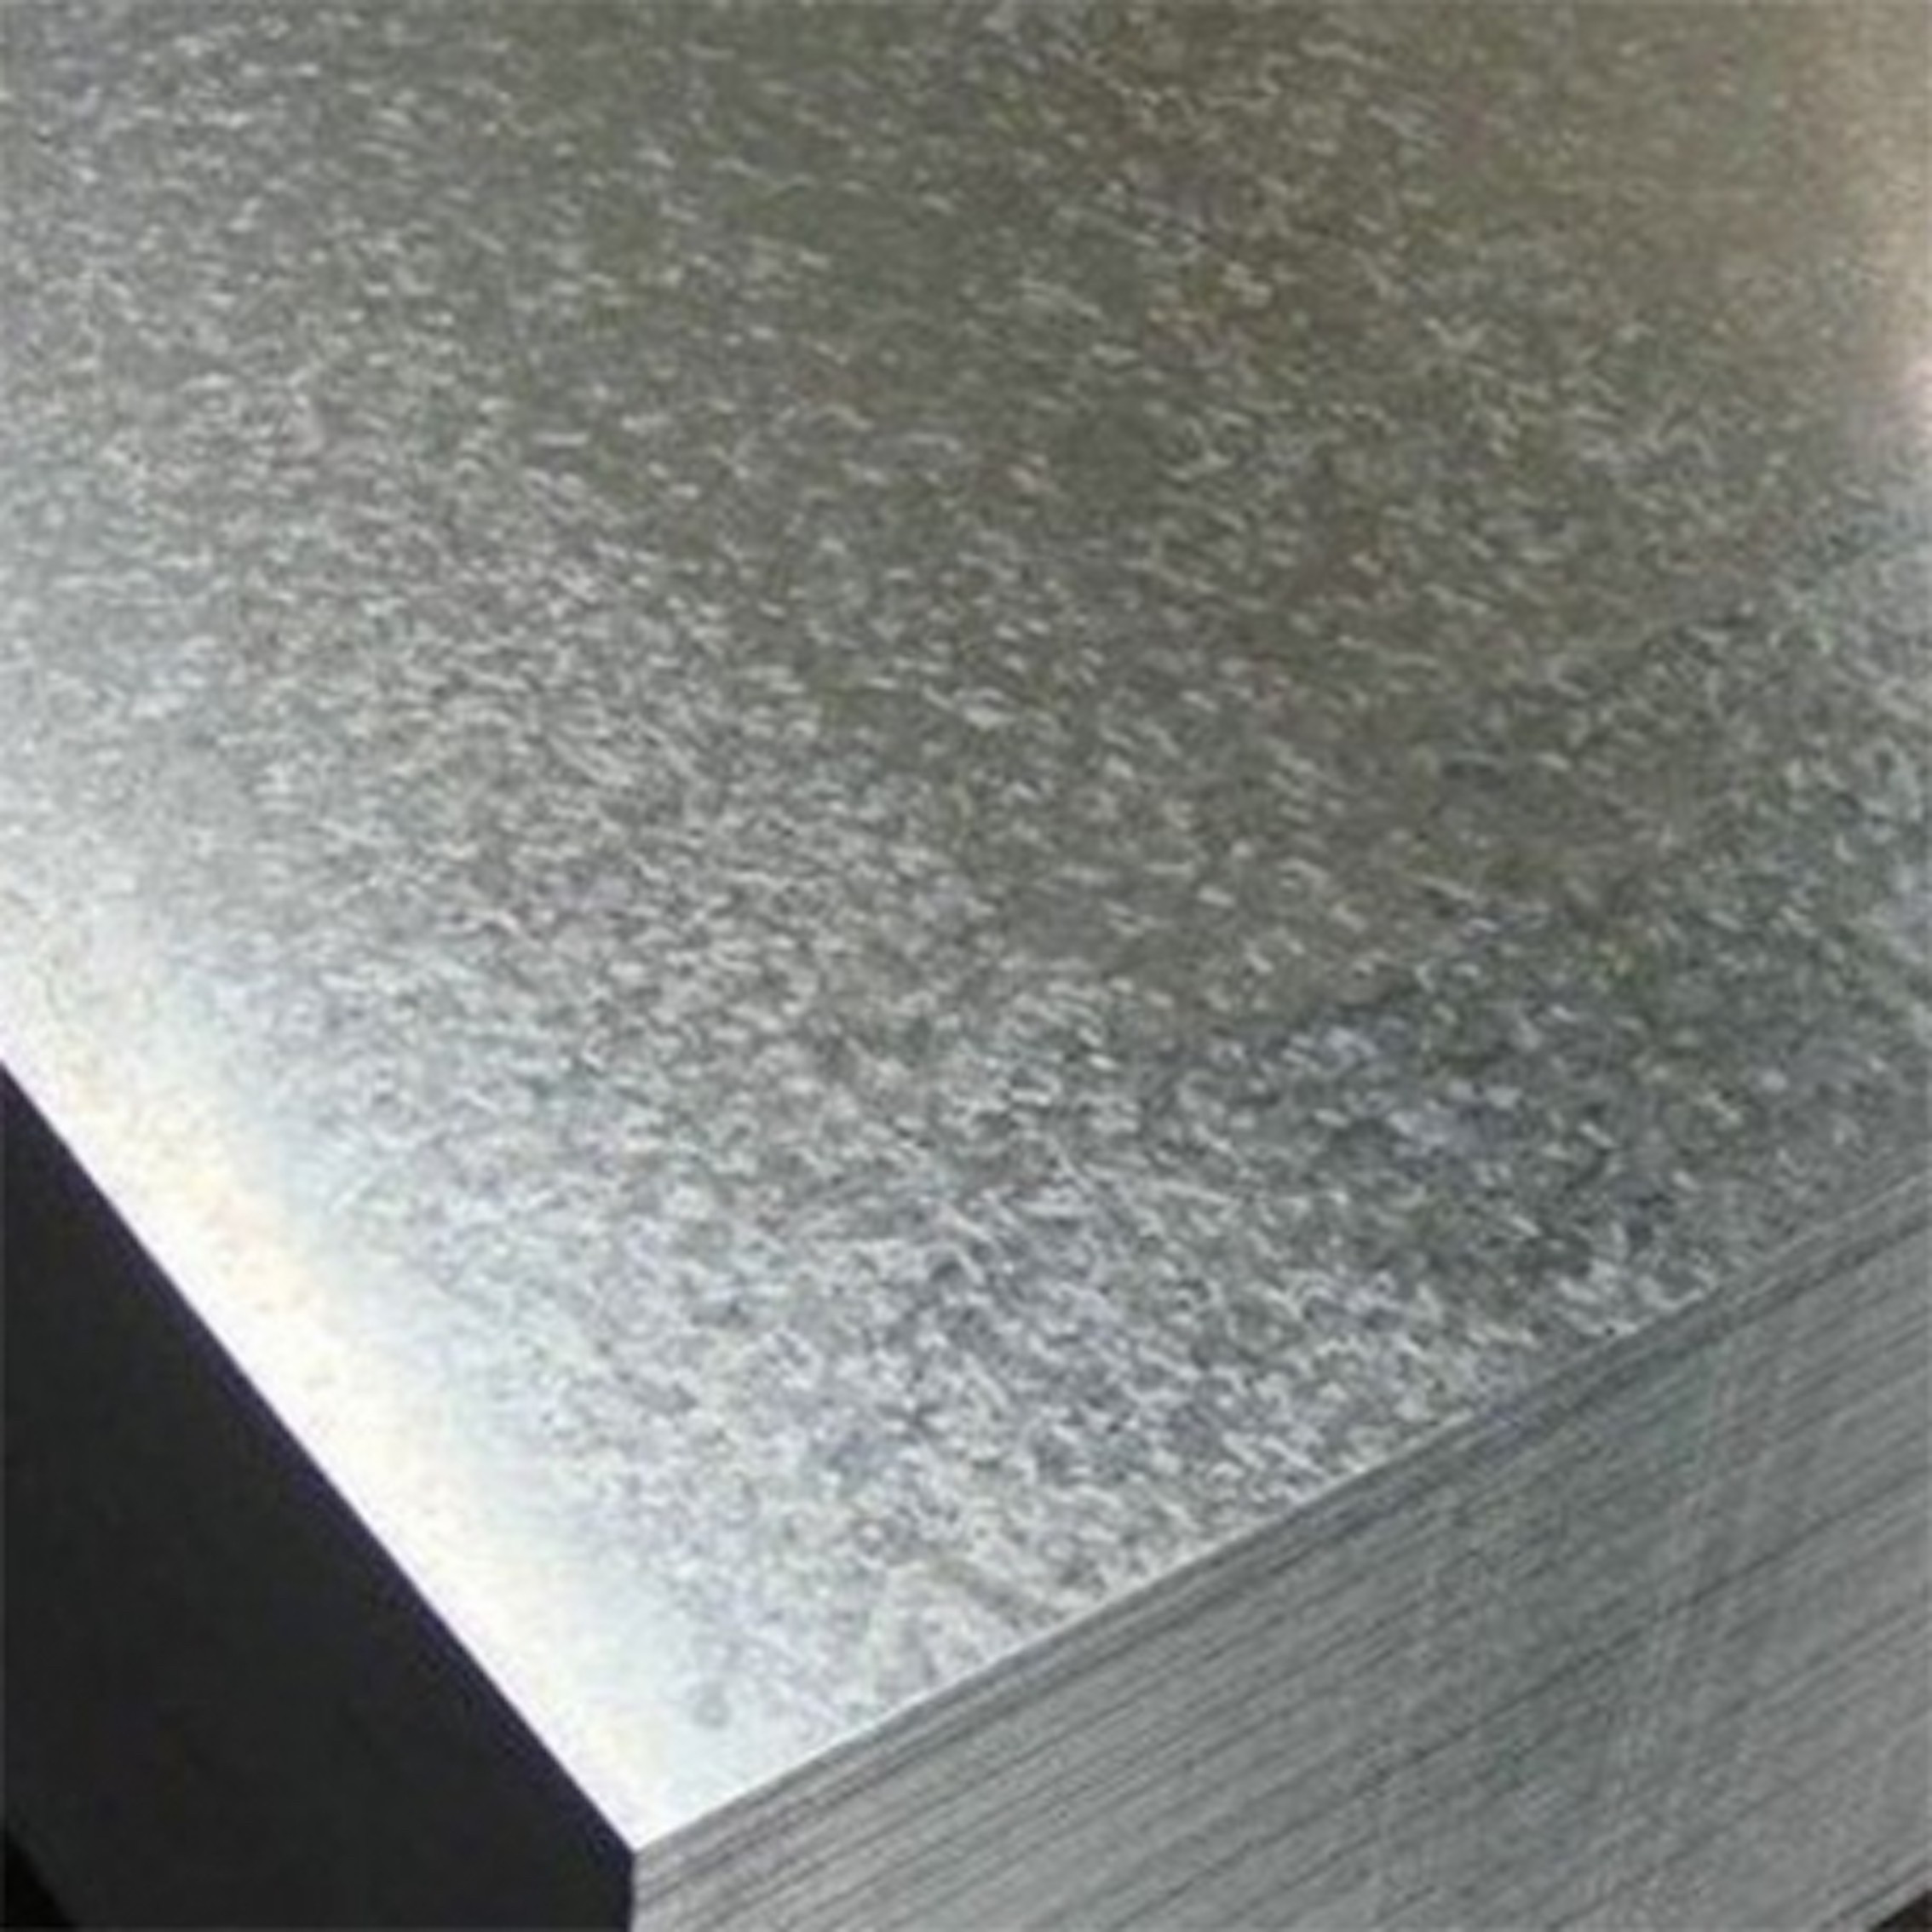 Plaque métallique en aluminium brossé